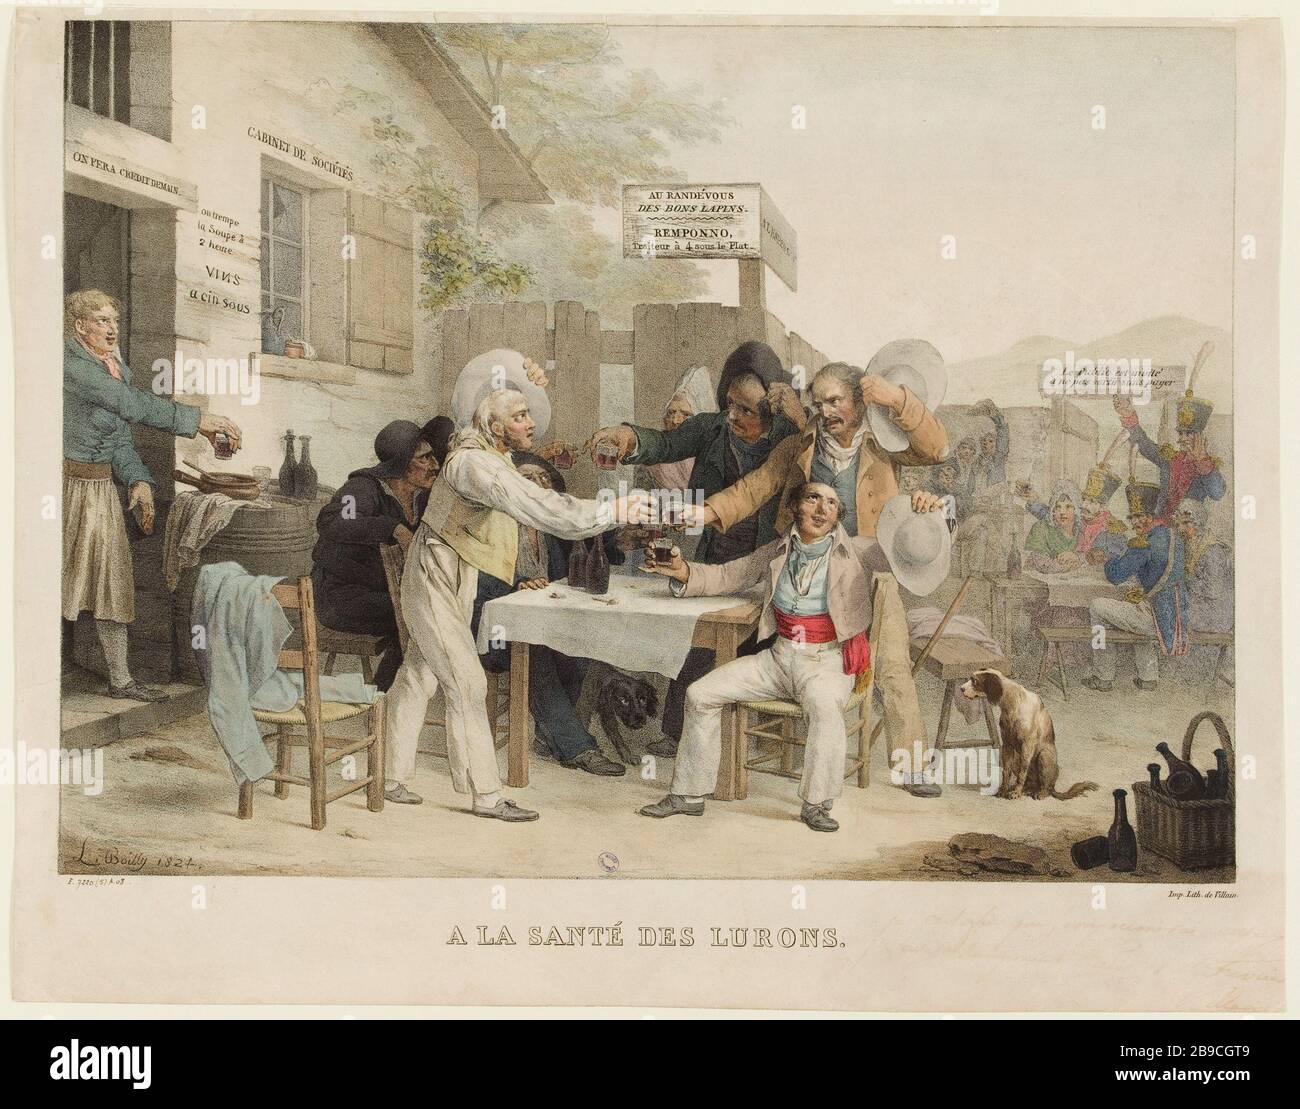 HEALTH OF LURONS Louis Boilly (1761-1845) et Villain. 'A la santé des lurons'. Lithographie colorée. 1824. Paris, musée Carnavalet. Stock Photo